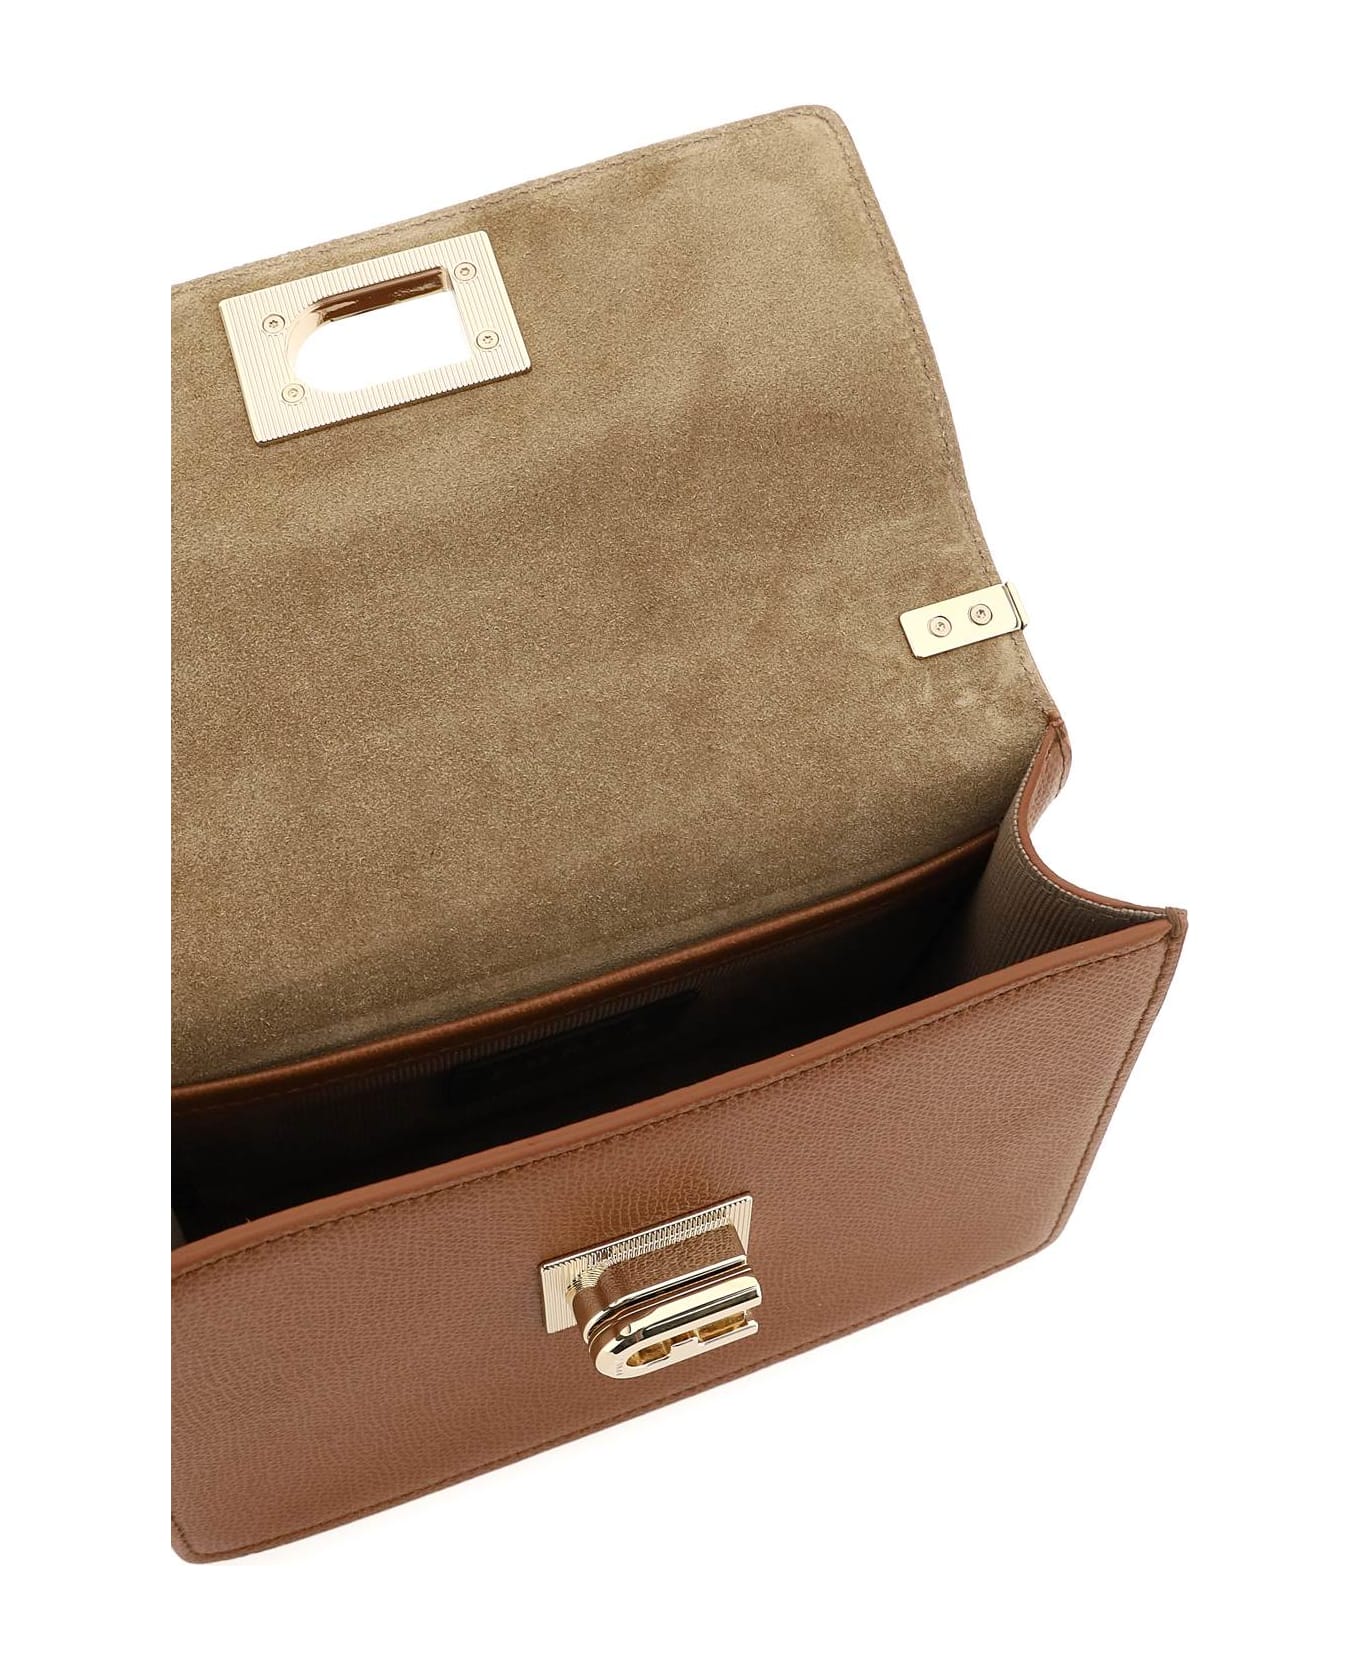 Furla 1927 Brown Leather Crossbody Bag - Brown ショルダーバッグ